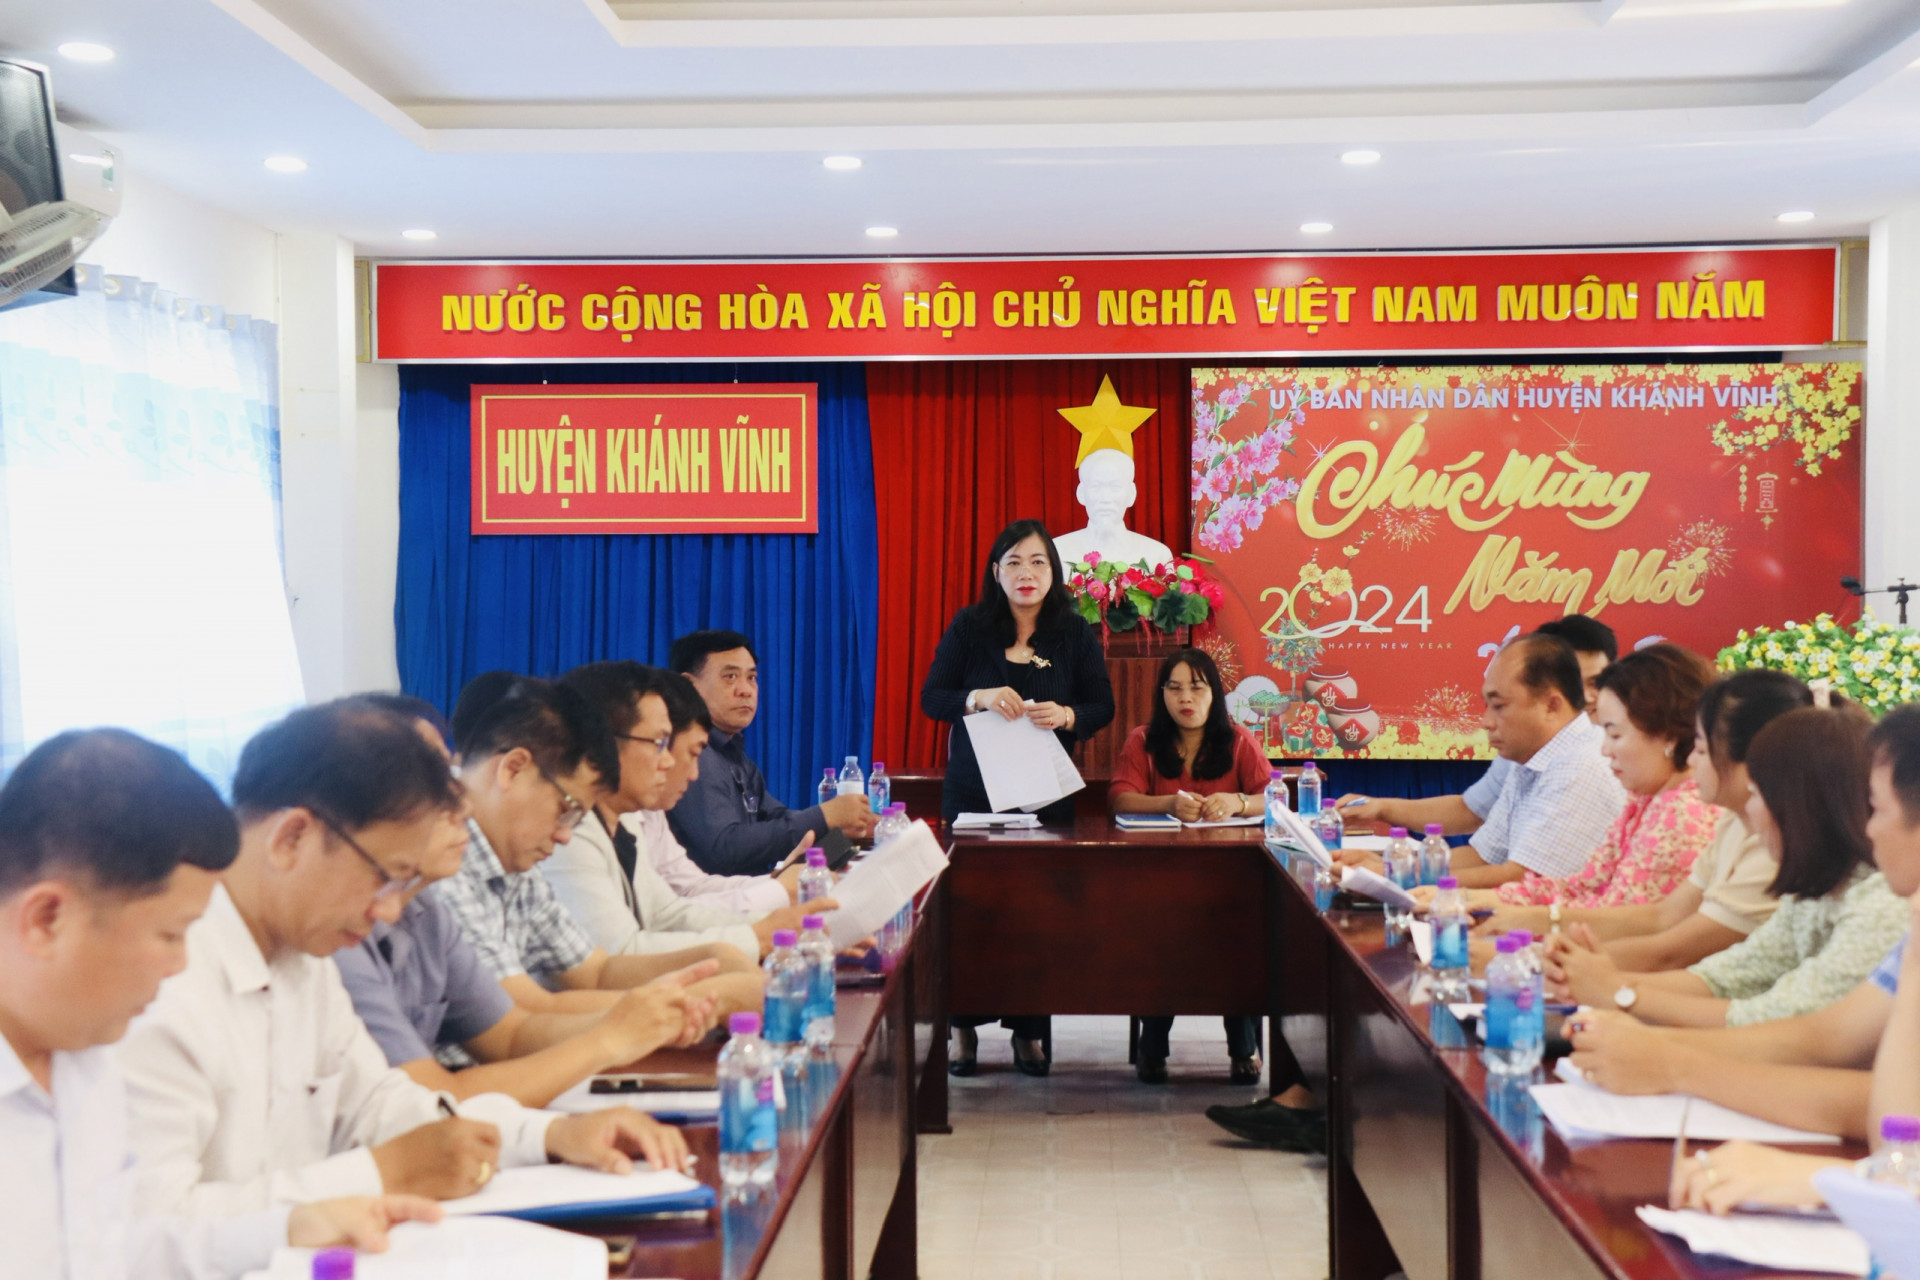 Bà Nguyễn Thị Lệ Thanh - Giám đốc Sở Du lịch phát biểu tại buổi làm việc với UBND huyện Khánh Vĩnh.